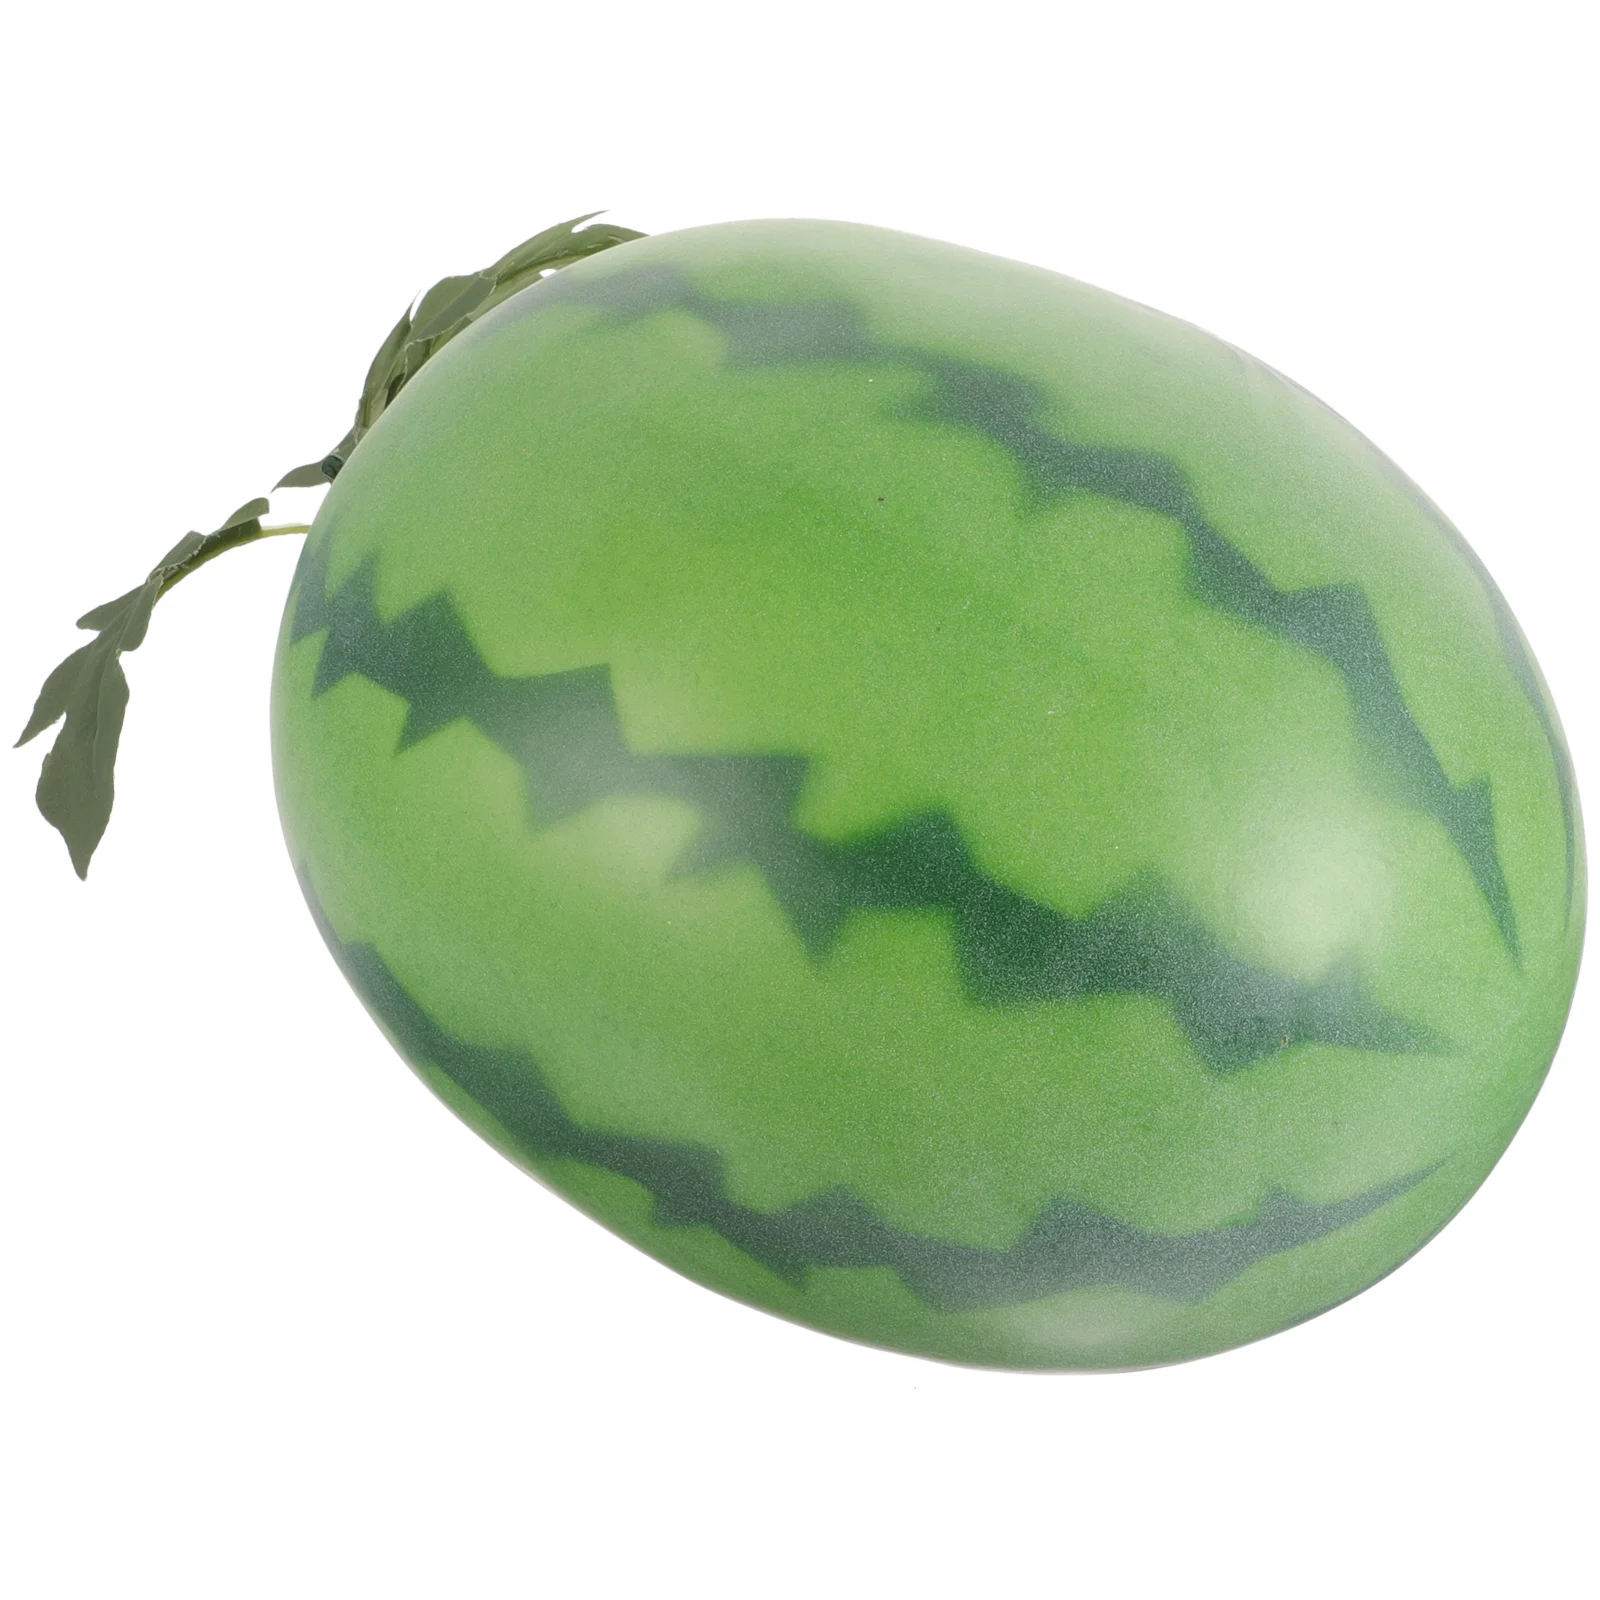 

Искусственный арбуз из пены фрукты Реалистичная имитация реалистичный арбуз реквизит для фотосъемки